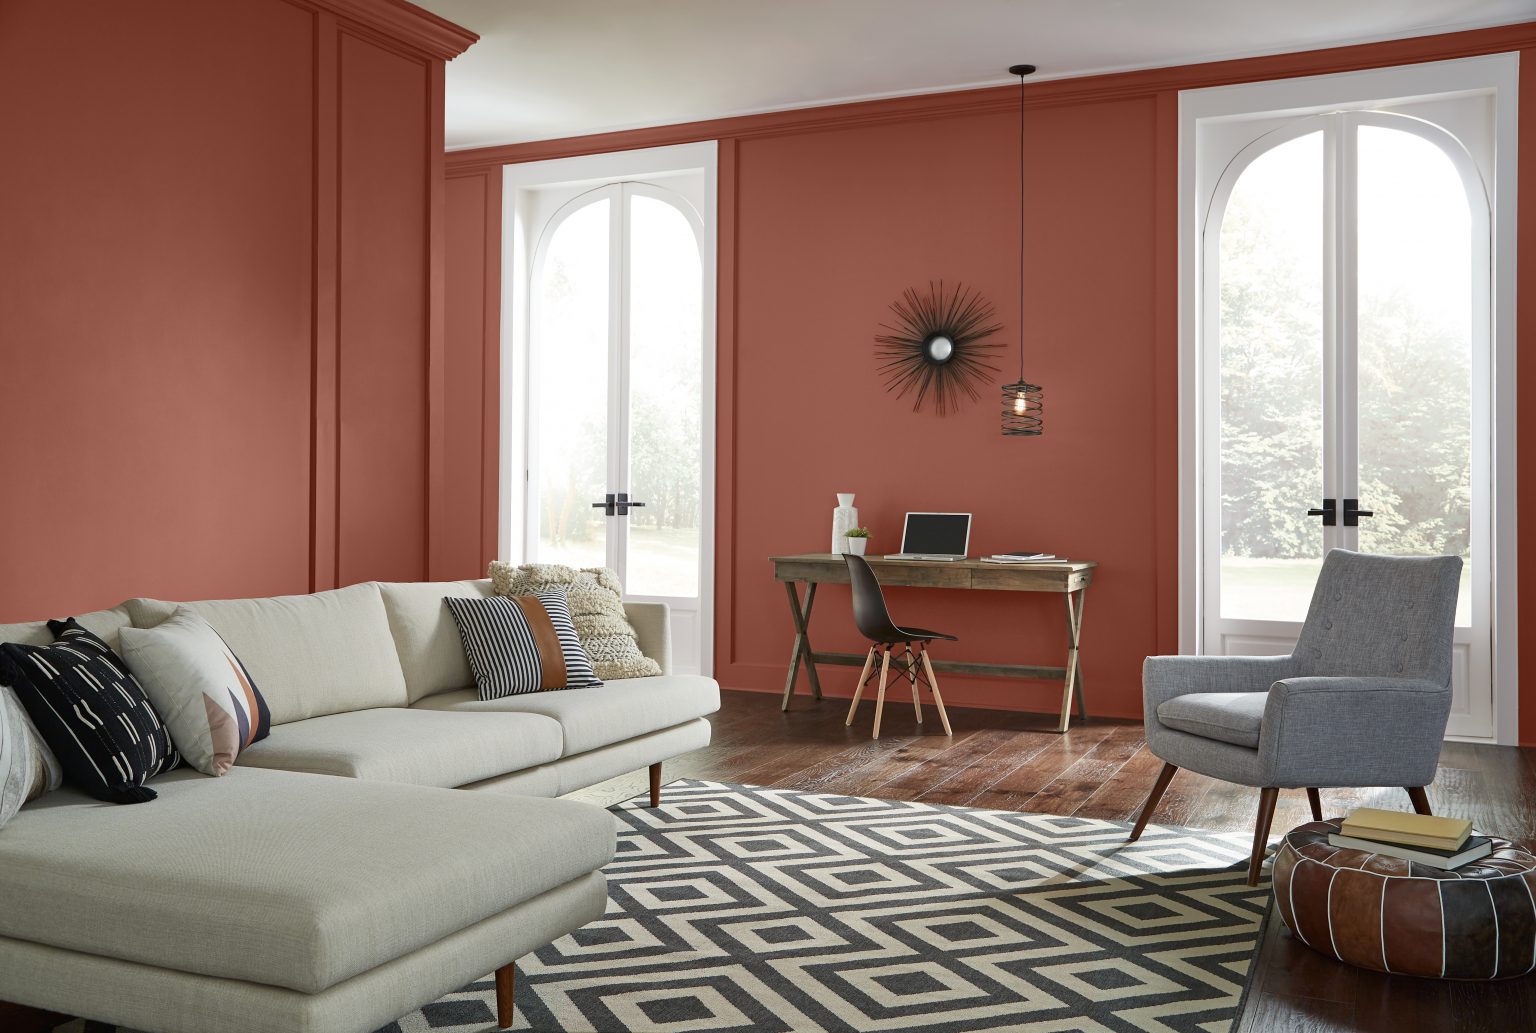 Un salon aux murs peints dans un rouge chaud, agrémenté d'un tapis géométrique et de meubles neutres